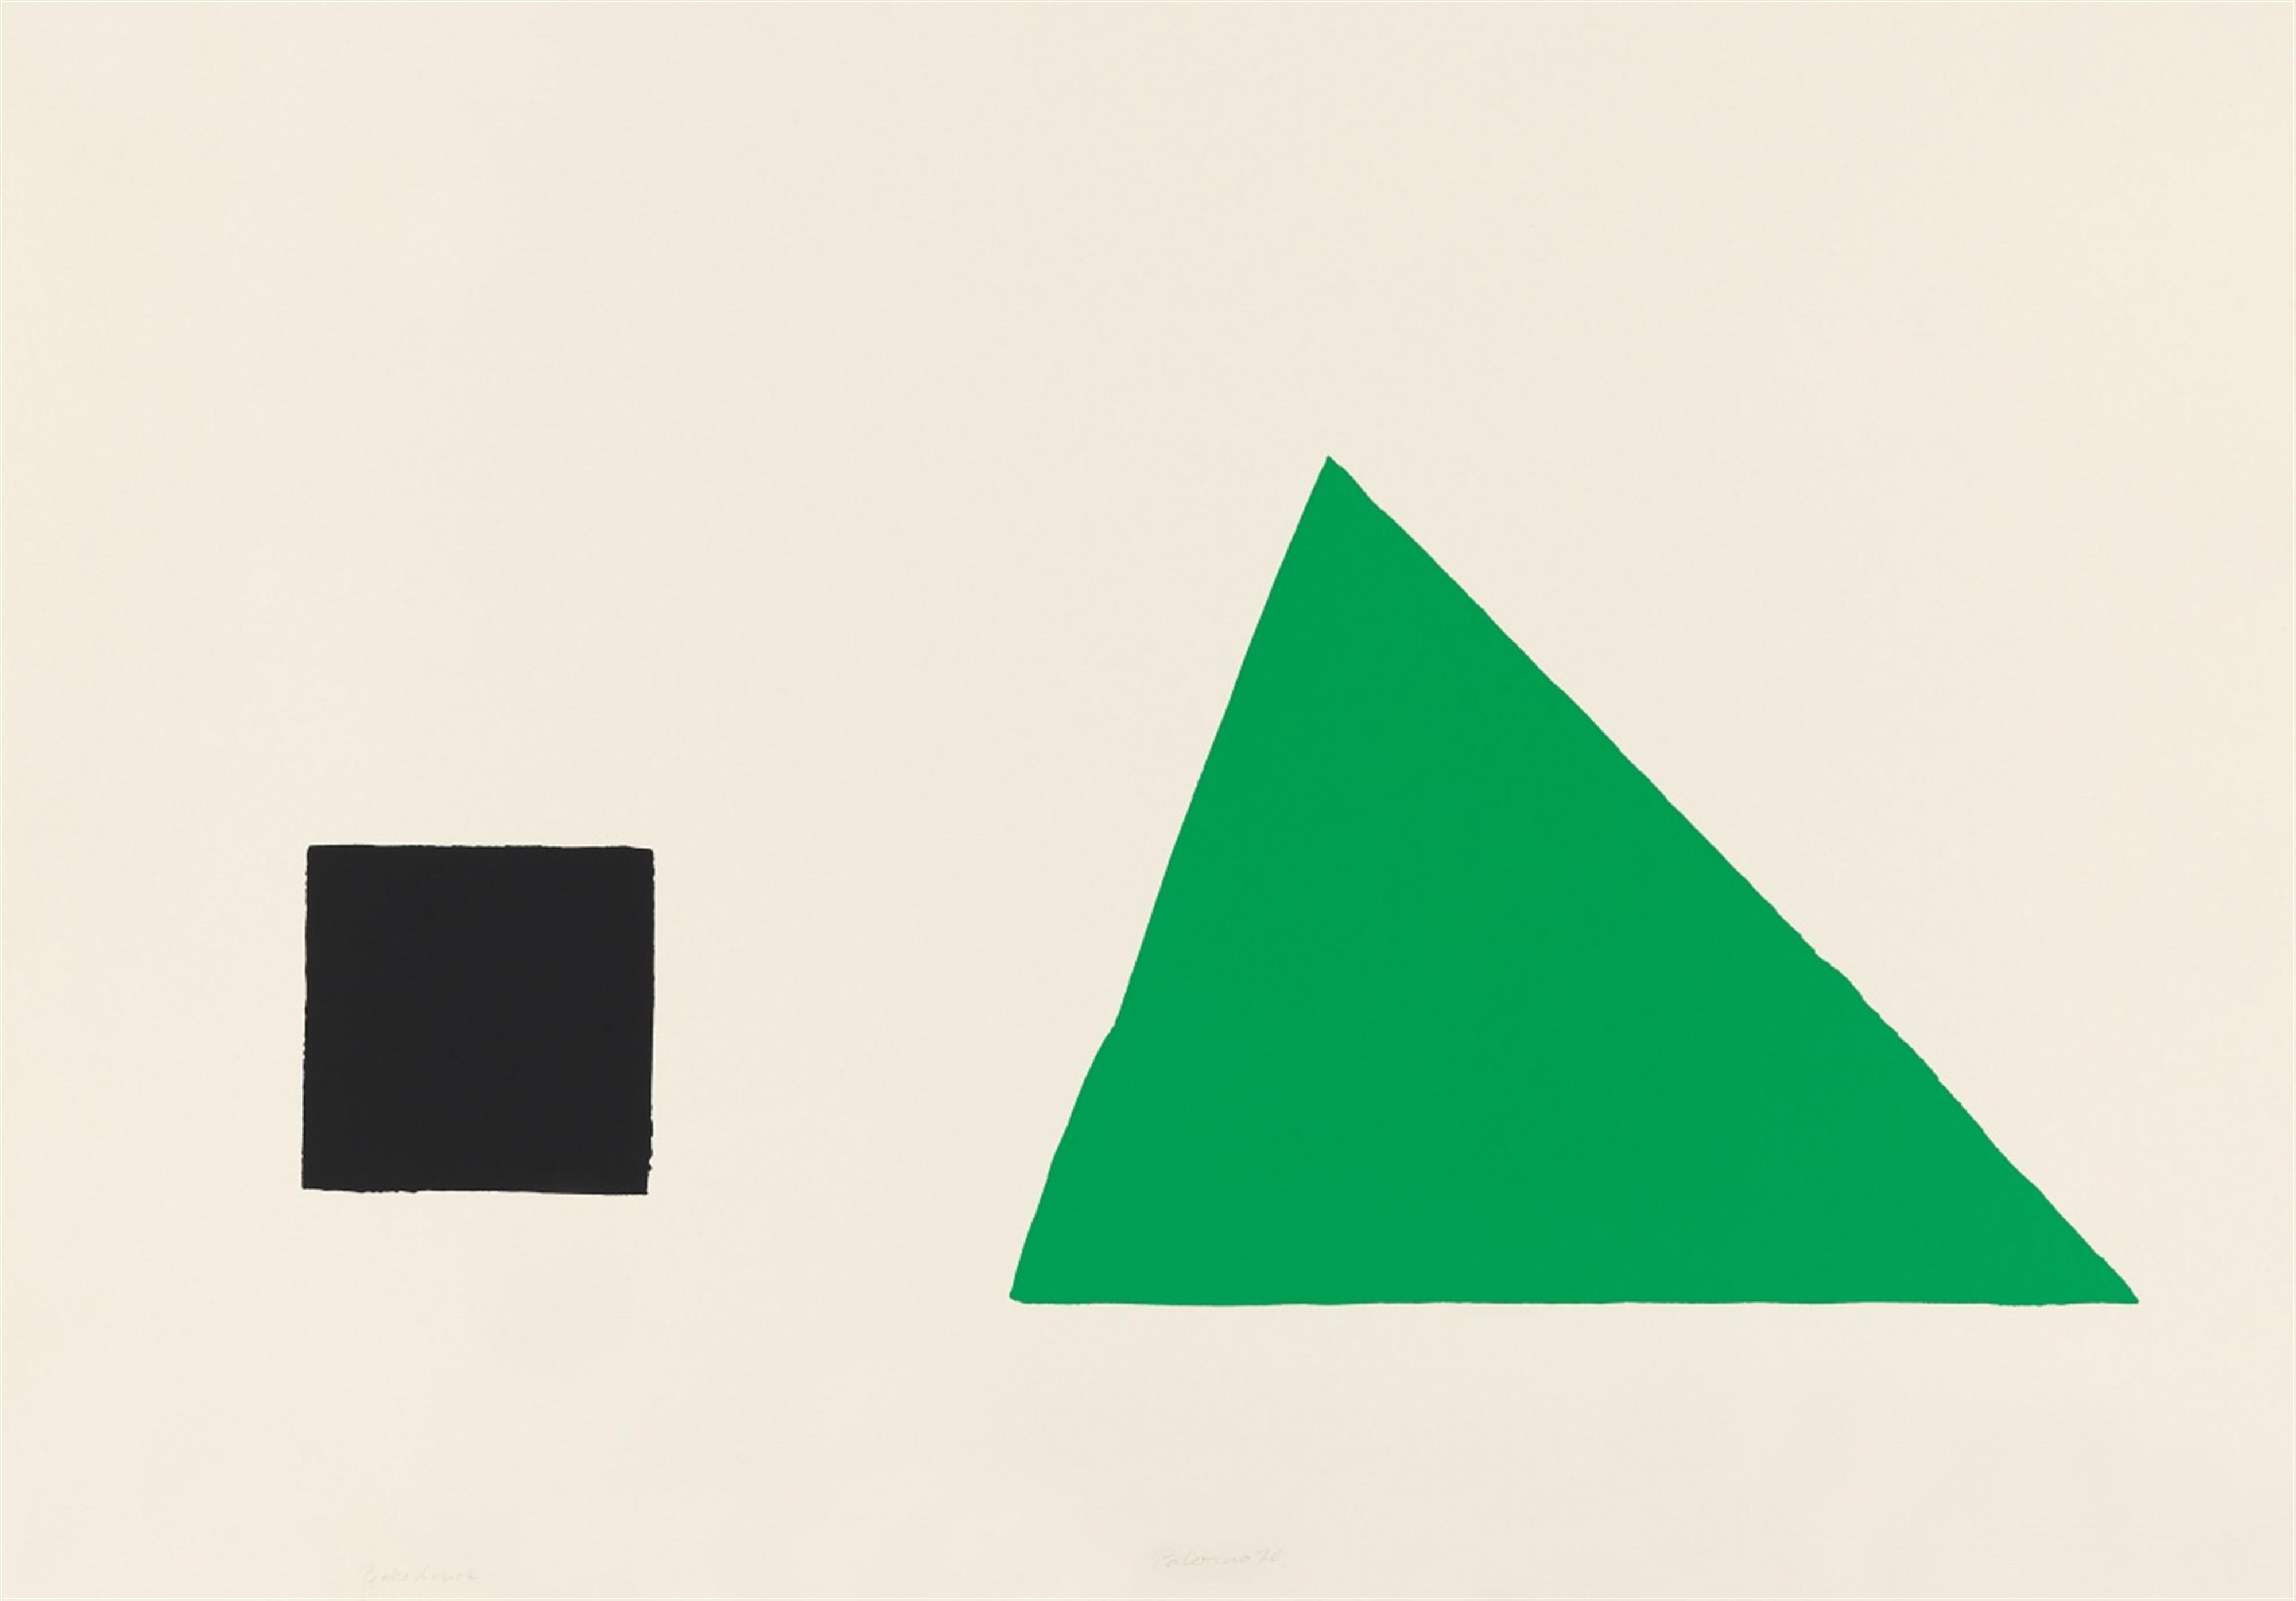 Blinky Palermo - Schwarzes Quadrat und grünes Dreieck - image-1